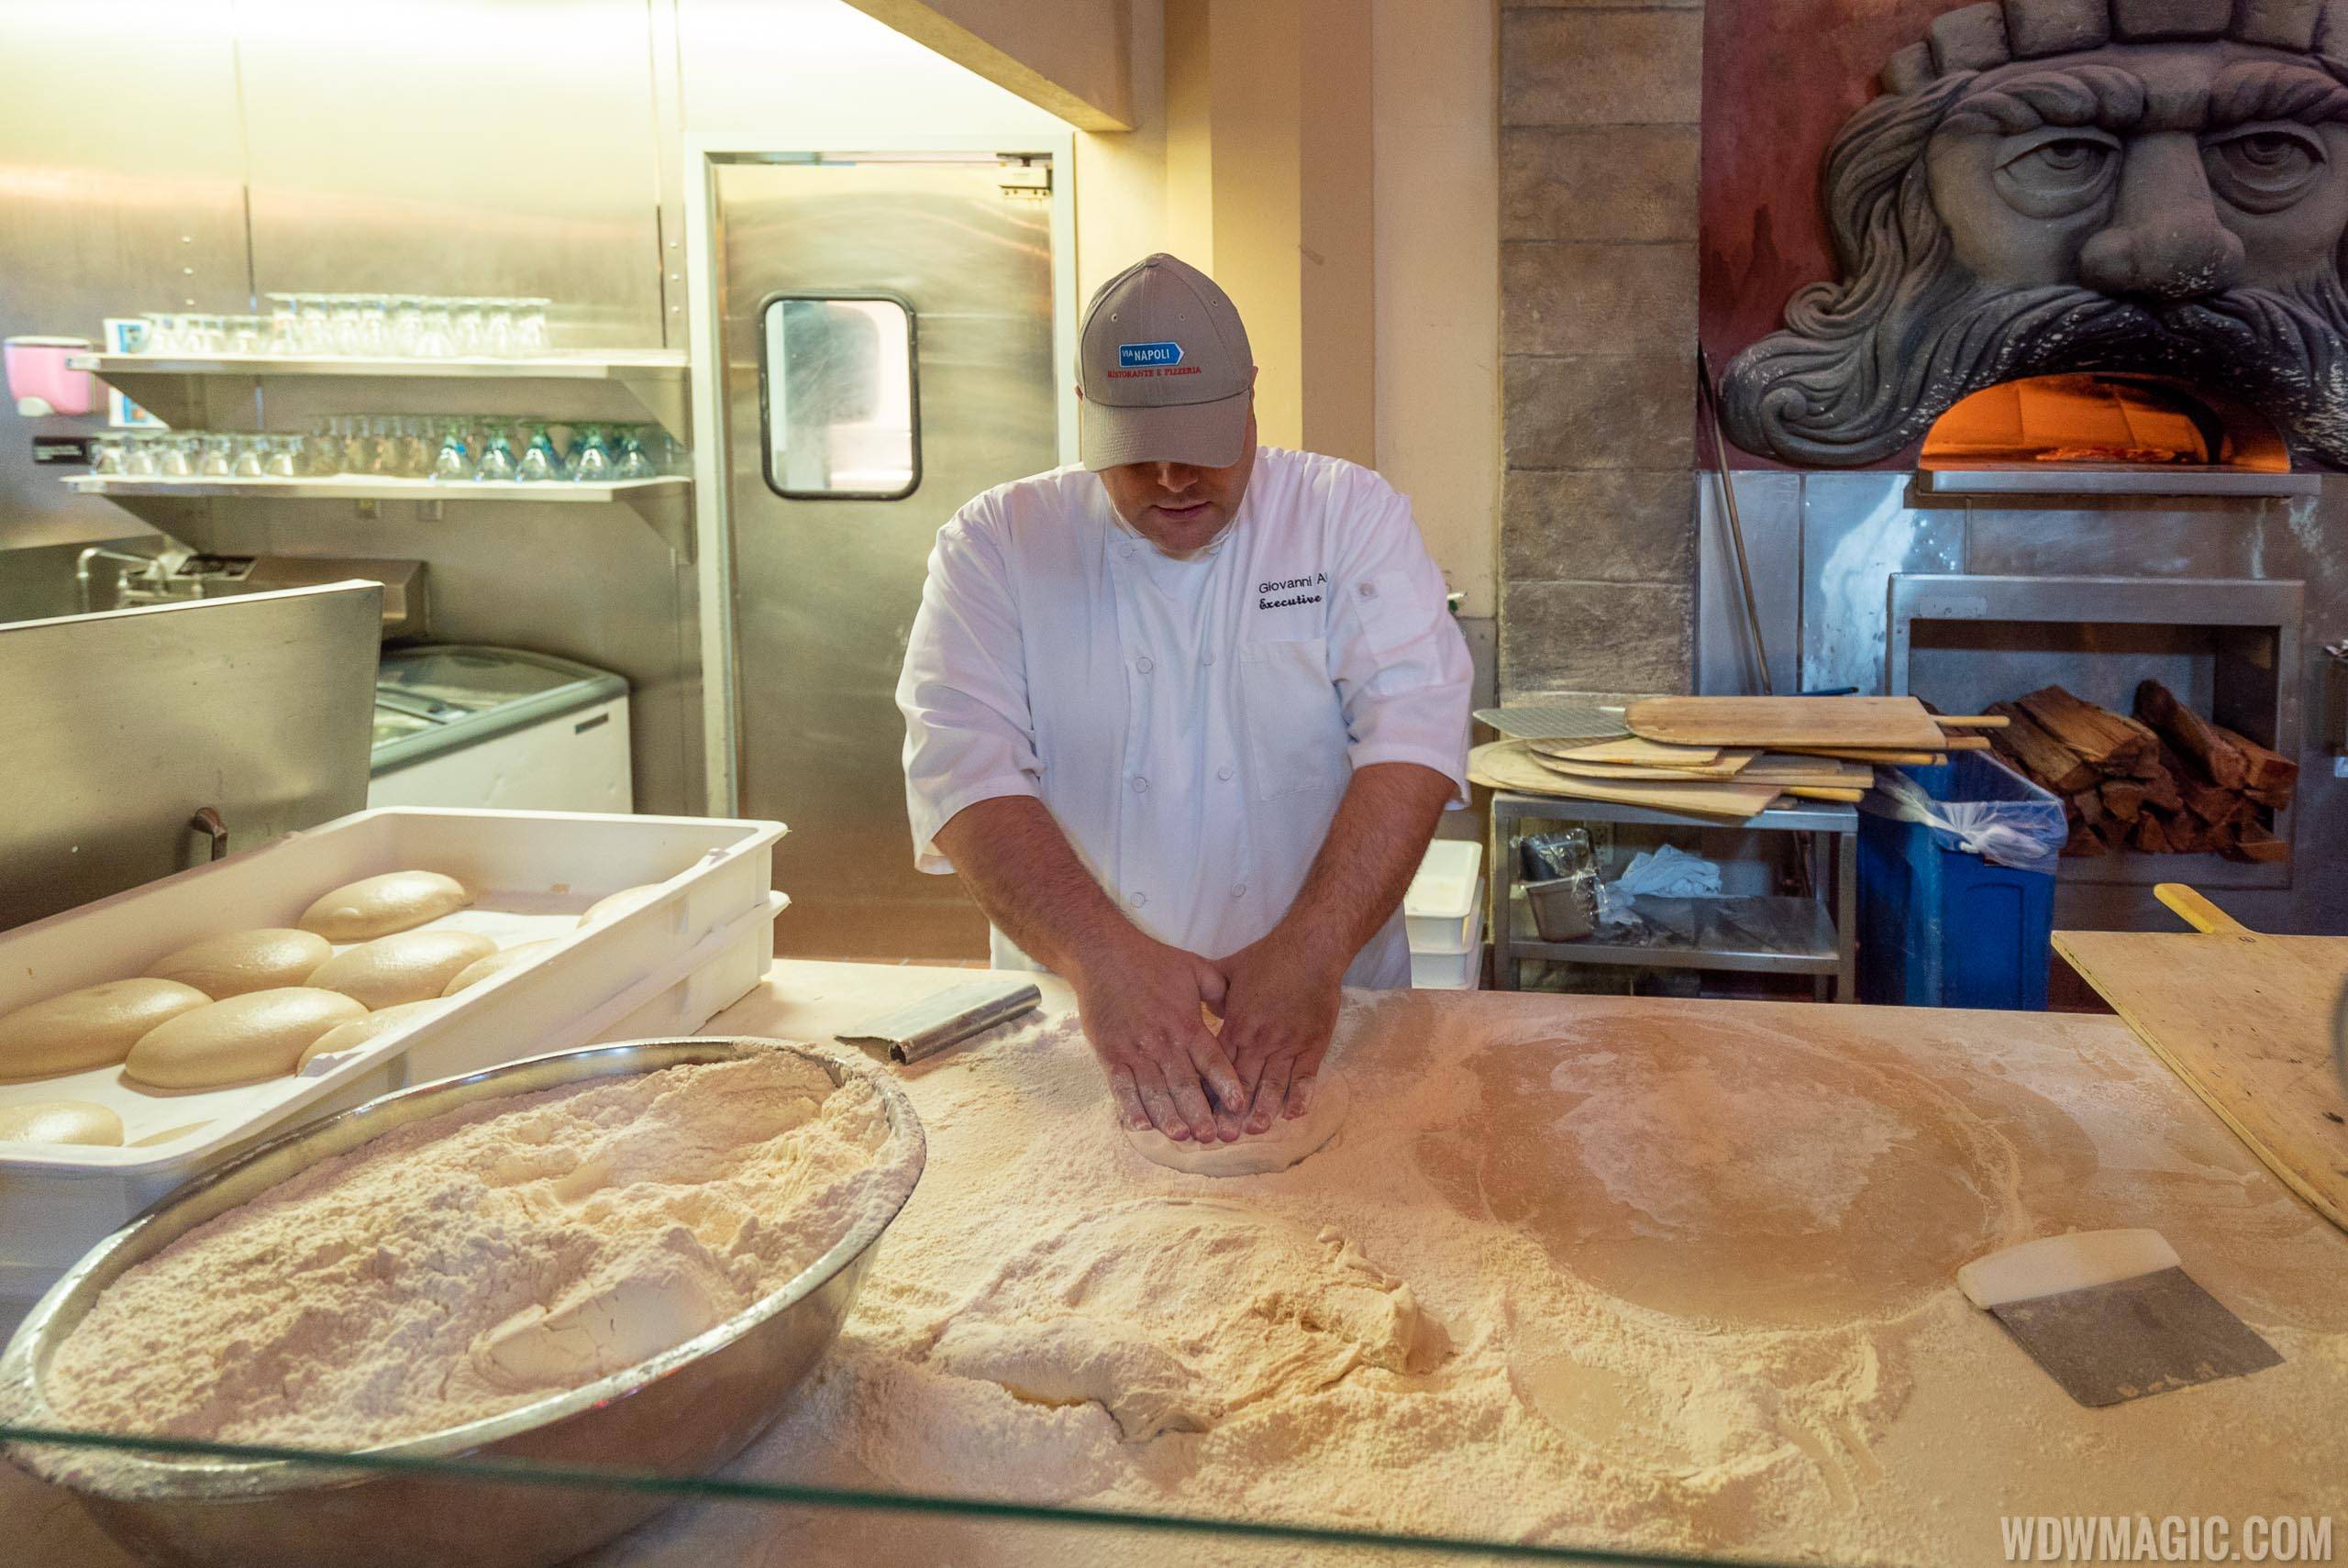 Via Napoli Executive Chef Giovanni Aletto begins the pizza making process